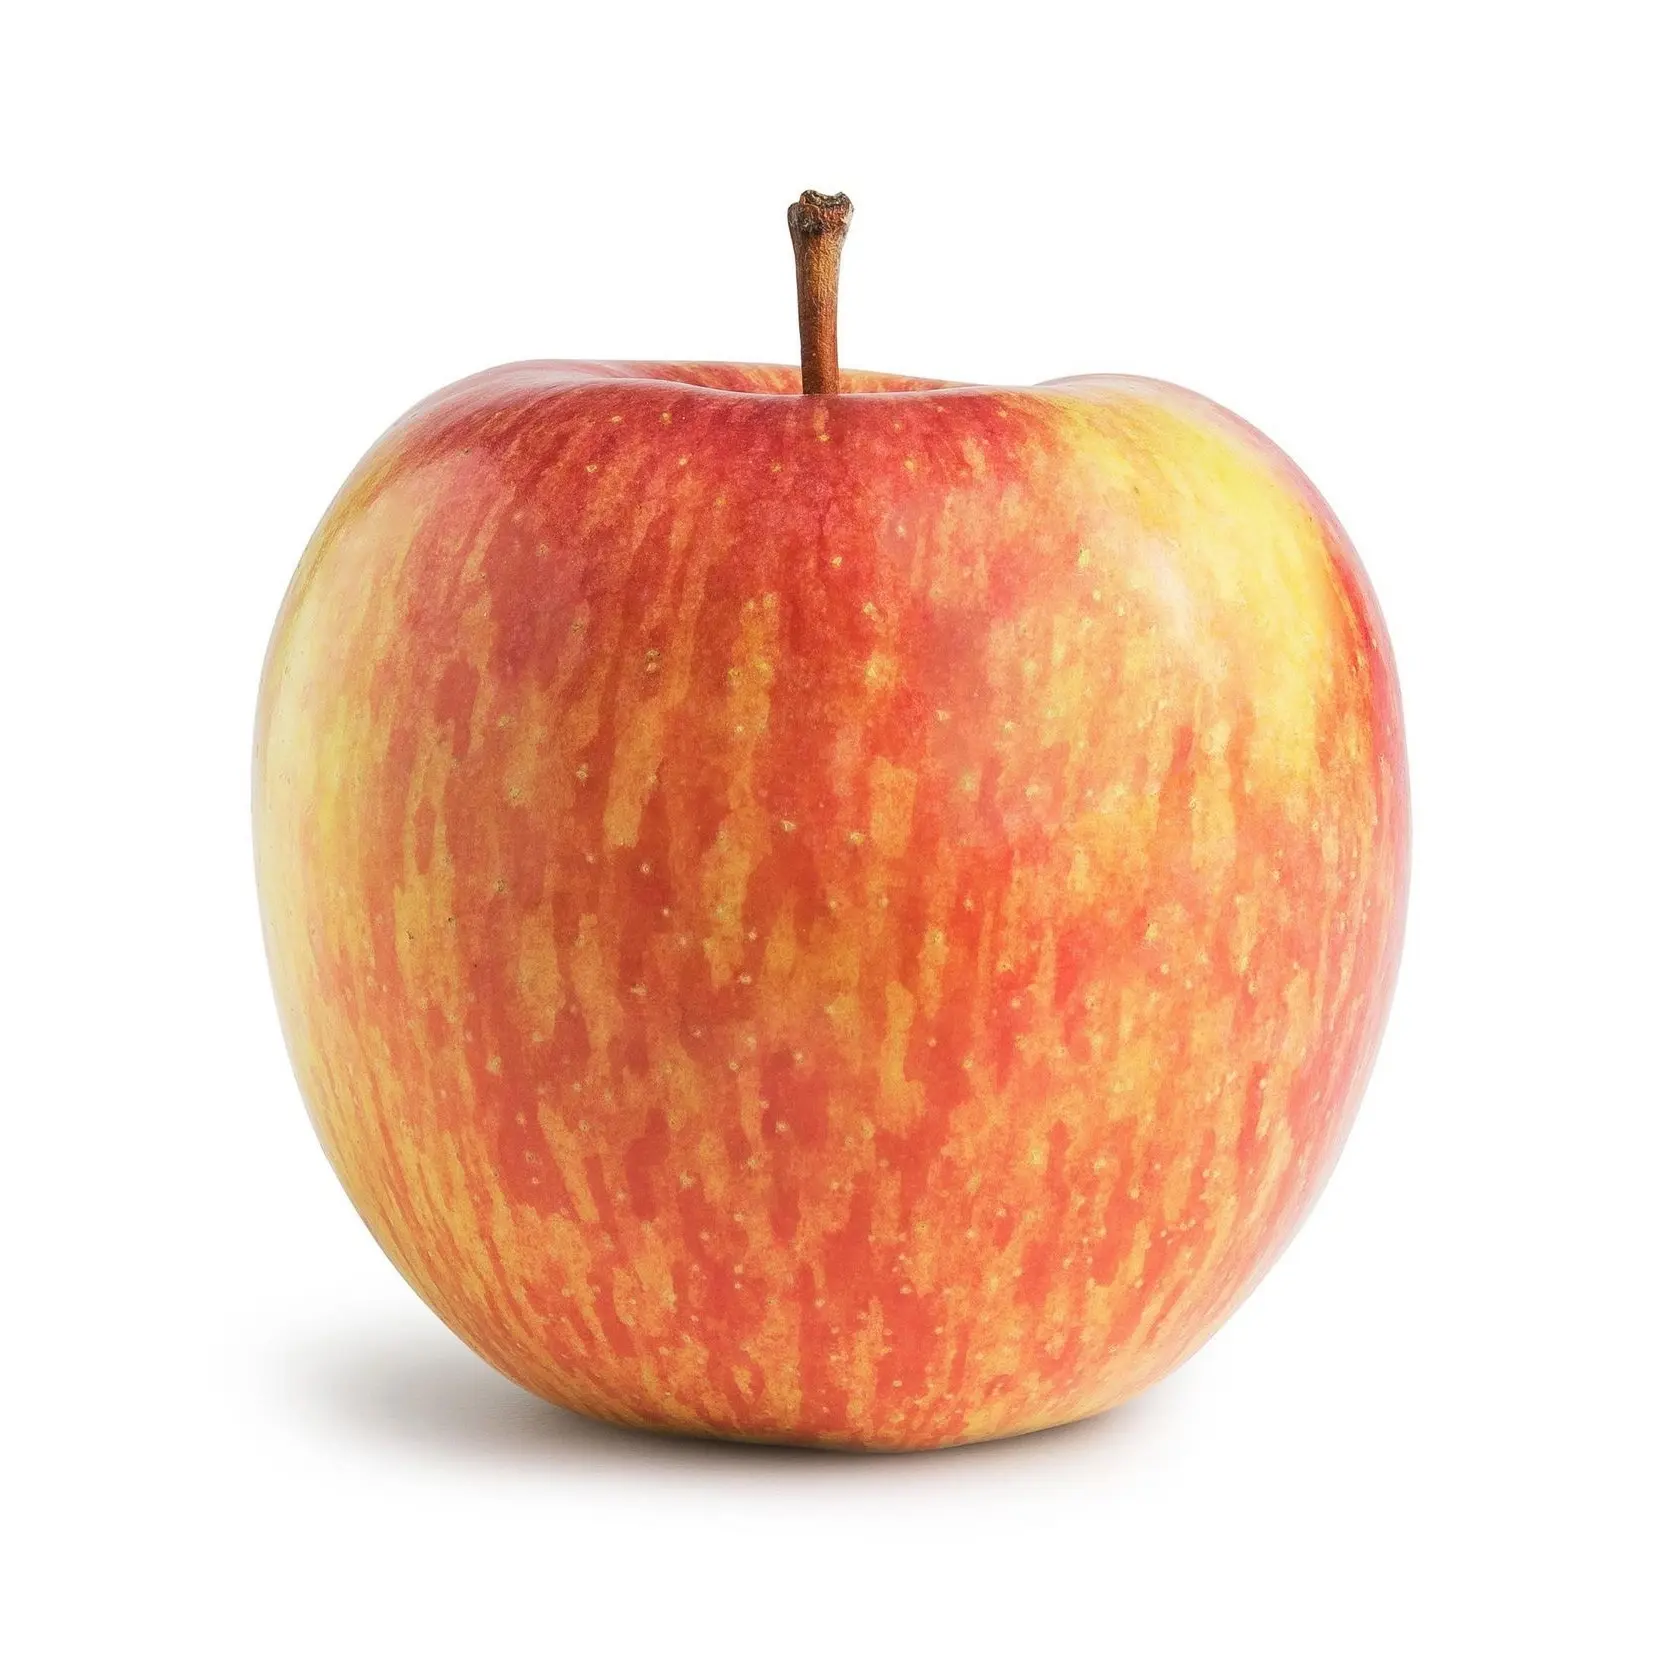 Rivenditore all'ingrosso e fornitore di dolce mela fresca fresca fuji mele rosse frutta fresca migliore qualità prezzo all'ingrosso comprare alla rinfusa Online